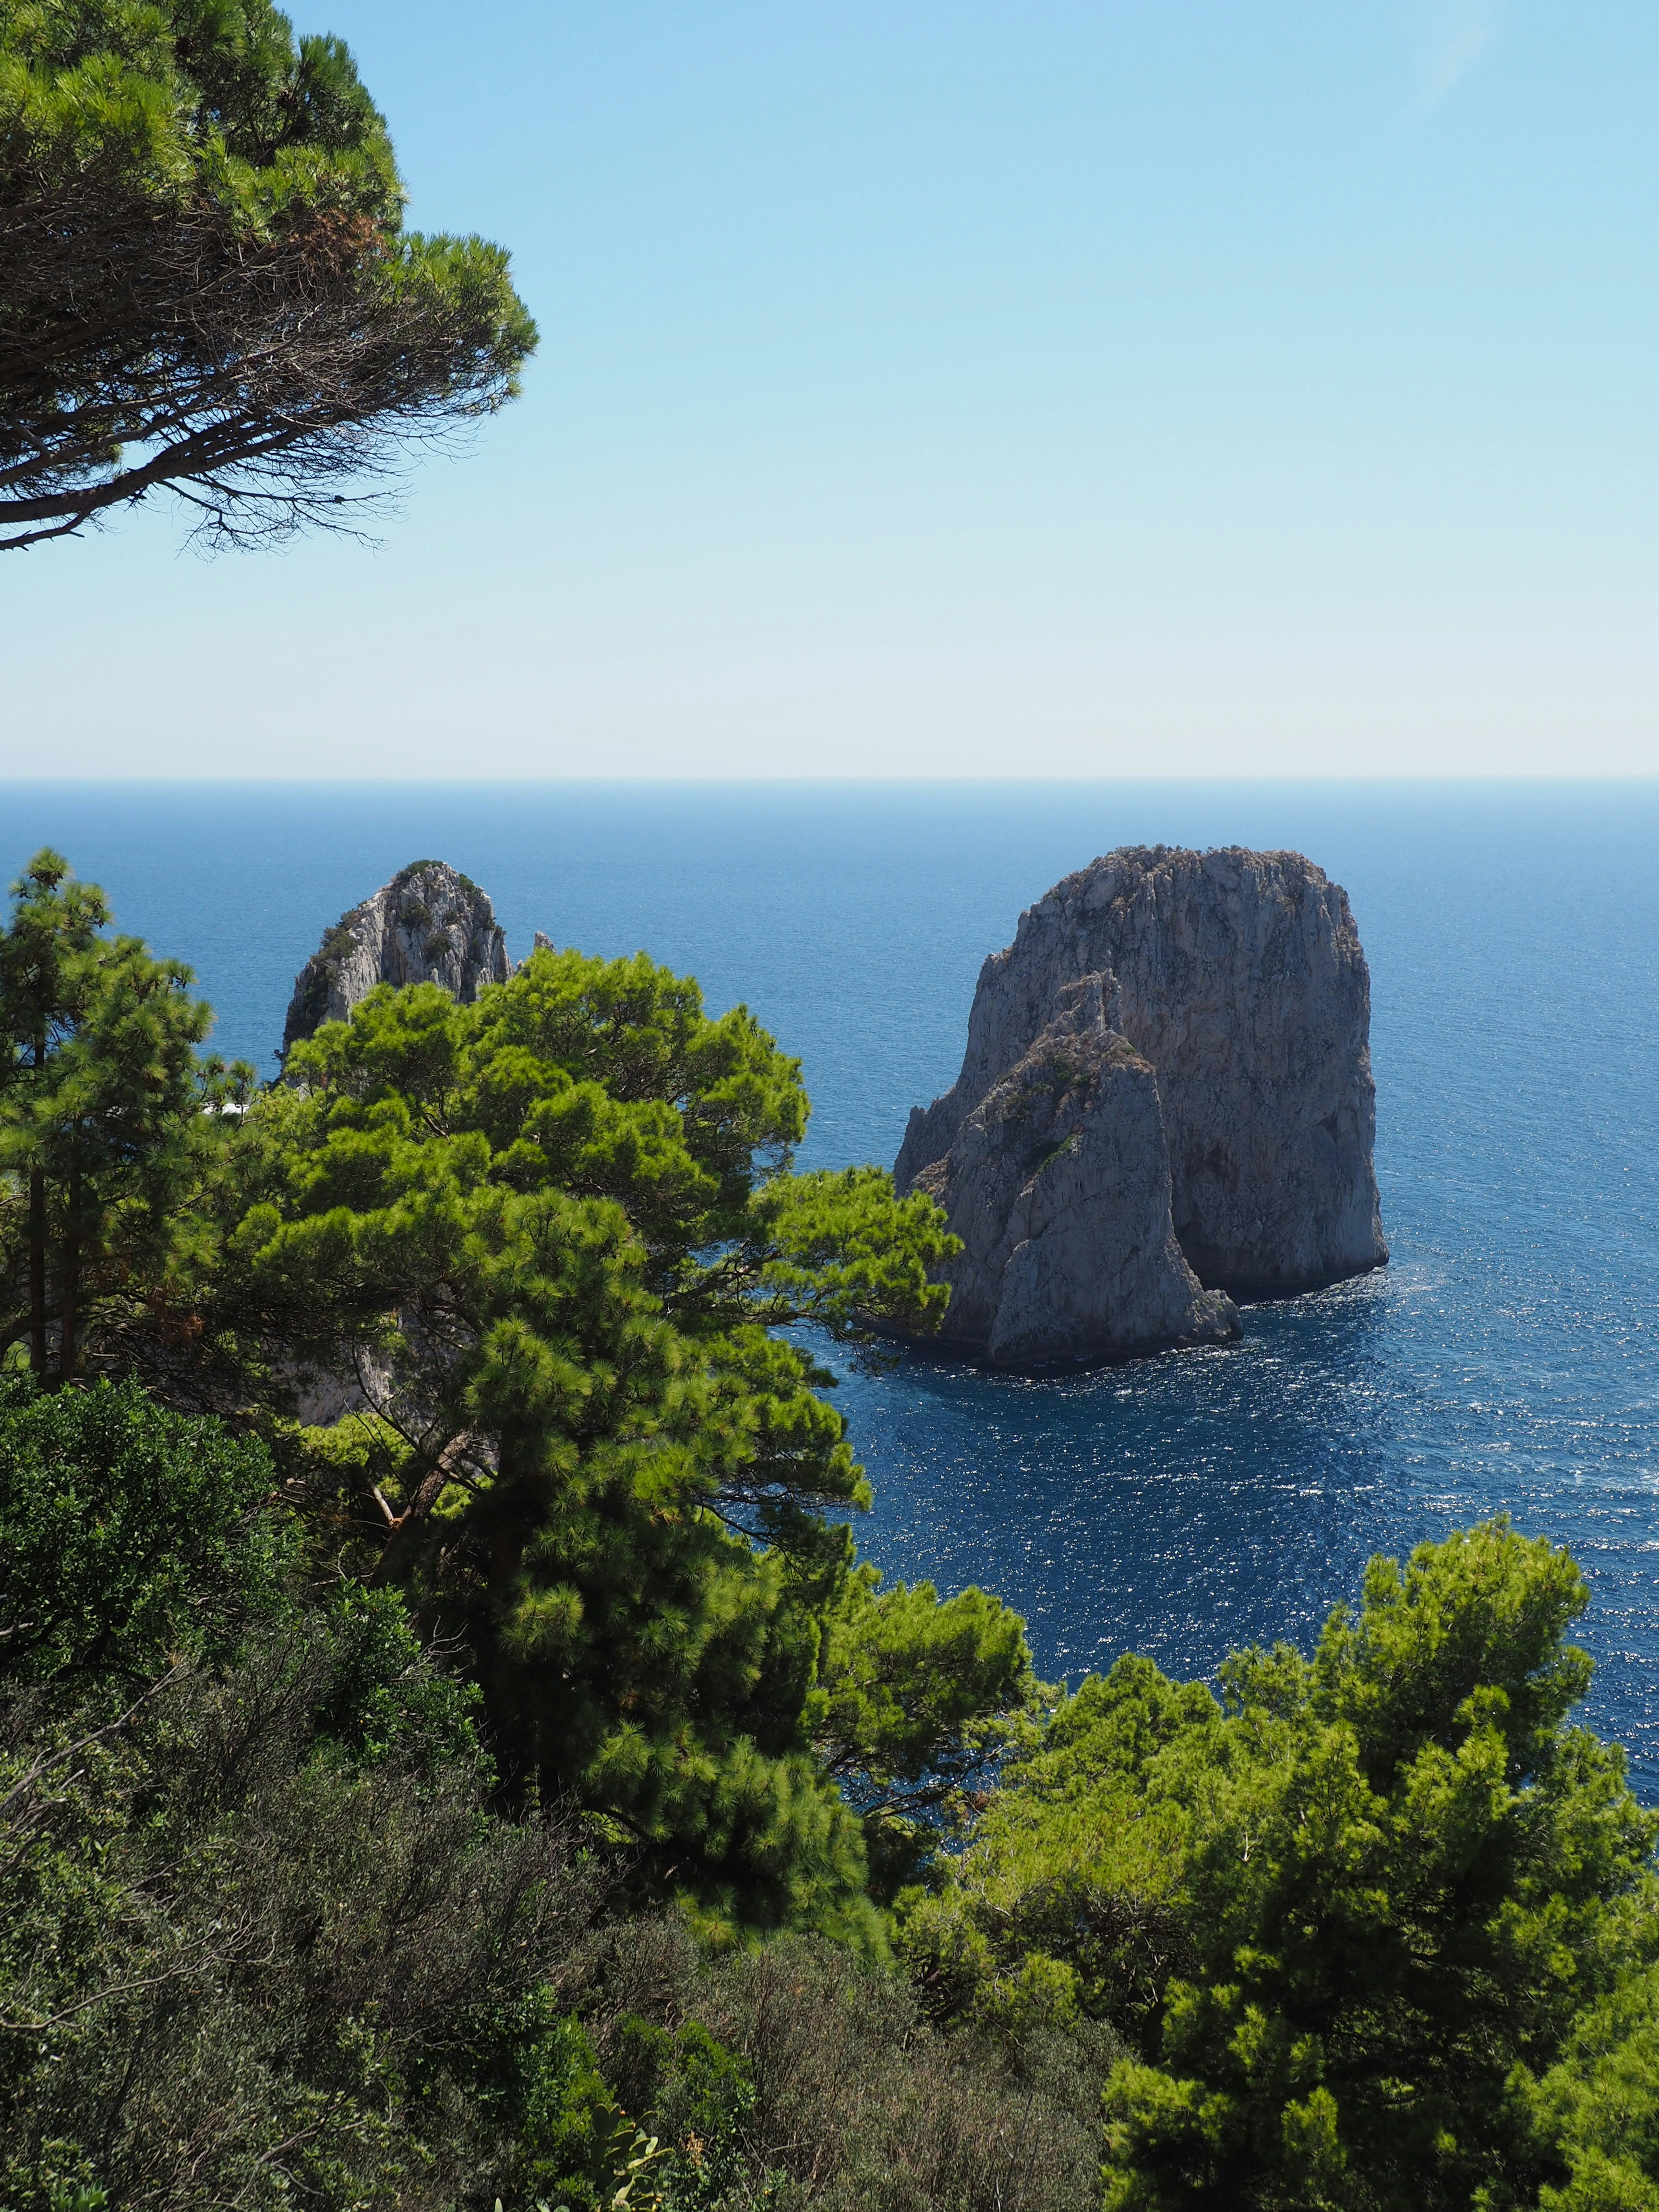 View of the Sea in Capri, Faraglioni - Aug 2020